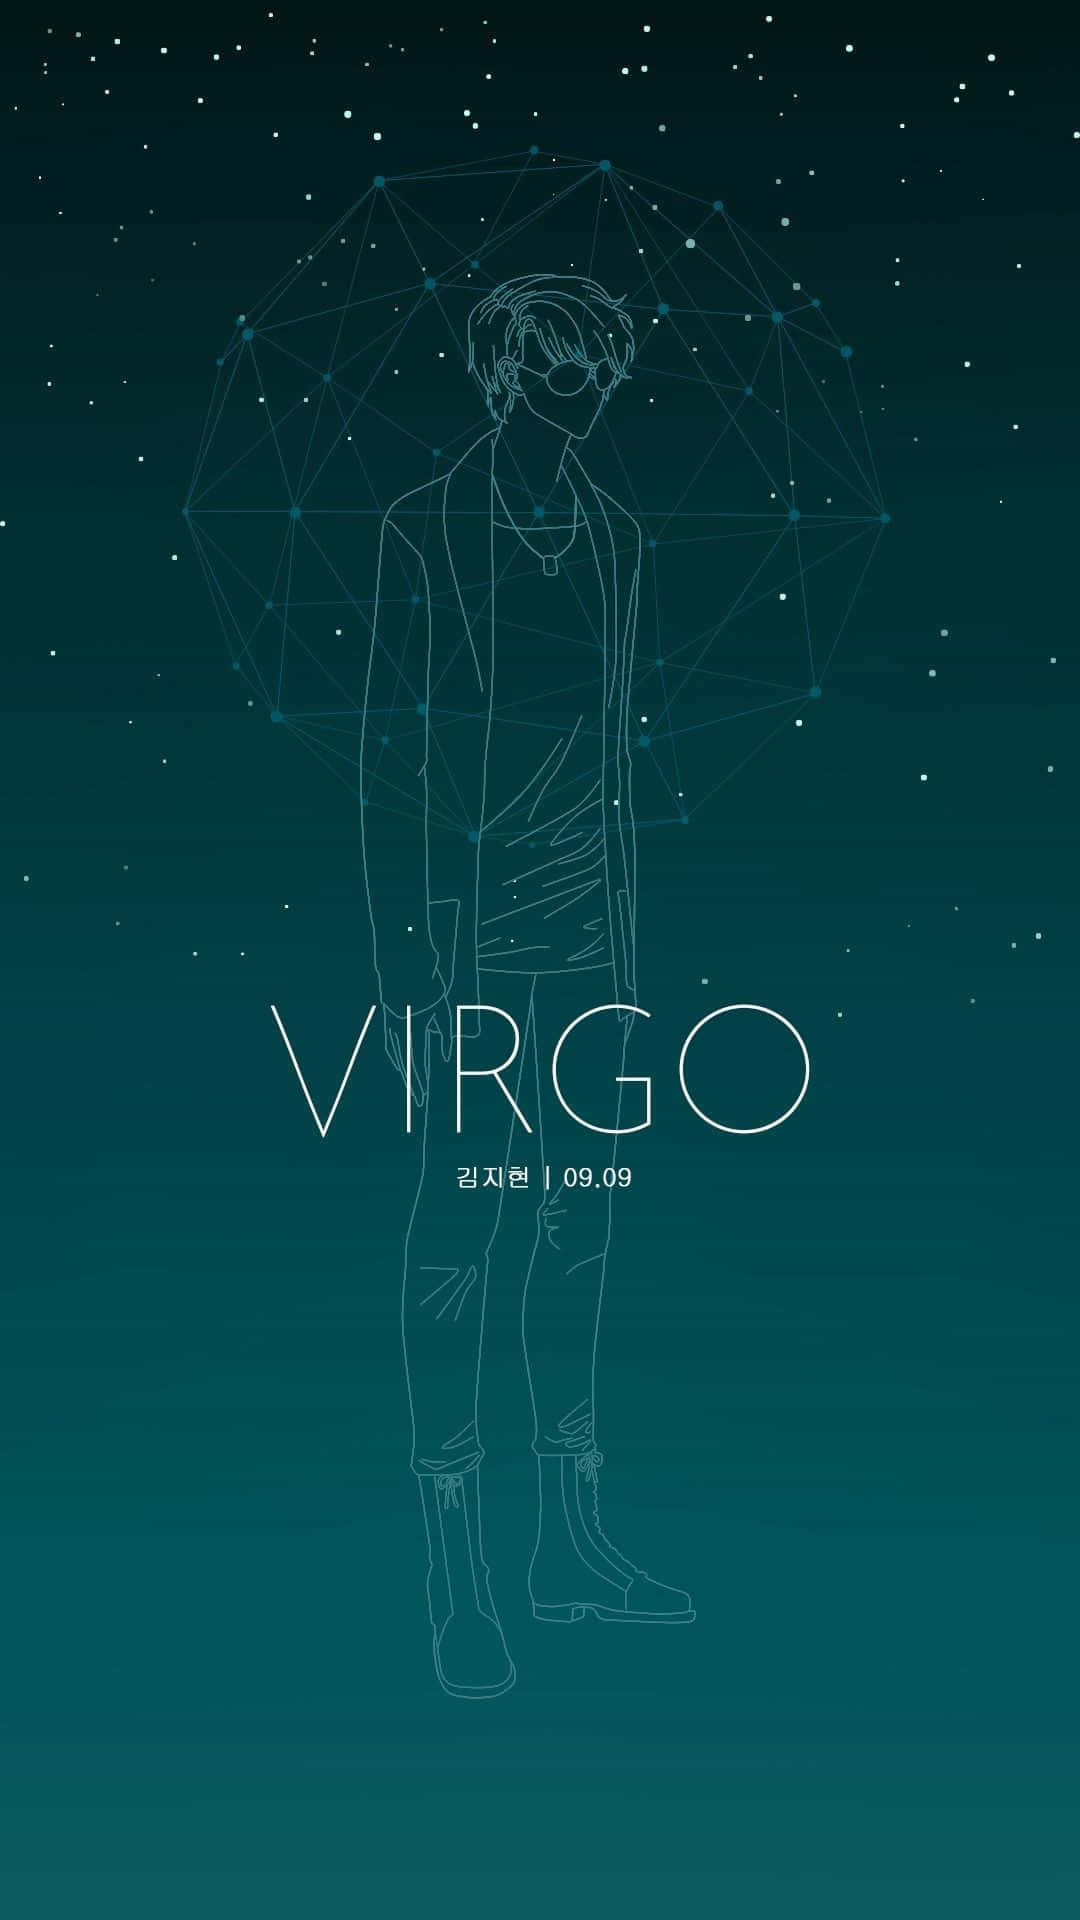 Virgomystic Messenger Astrologie Für Das Iphone. Wallpaper